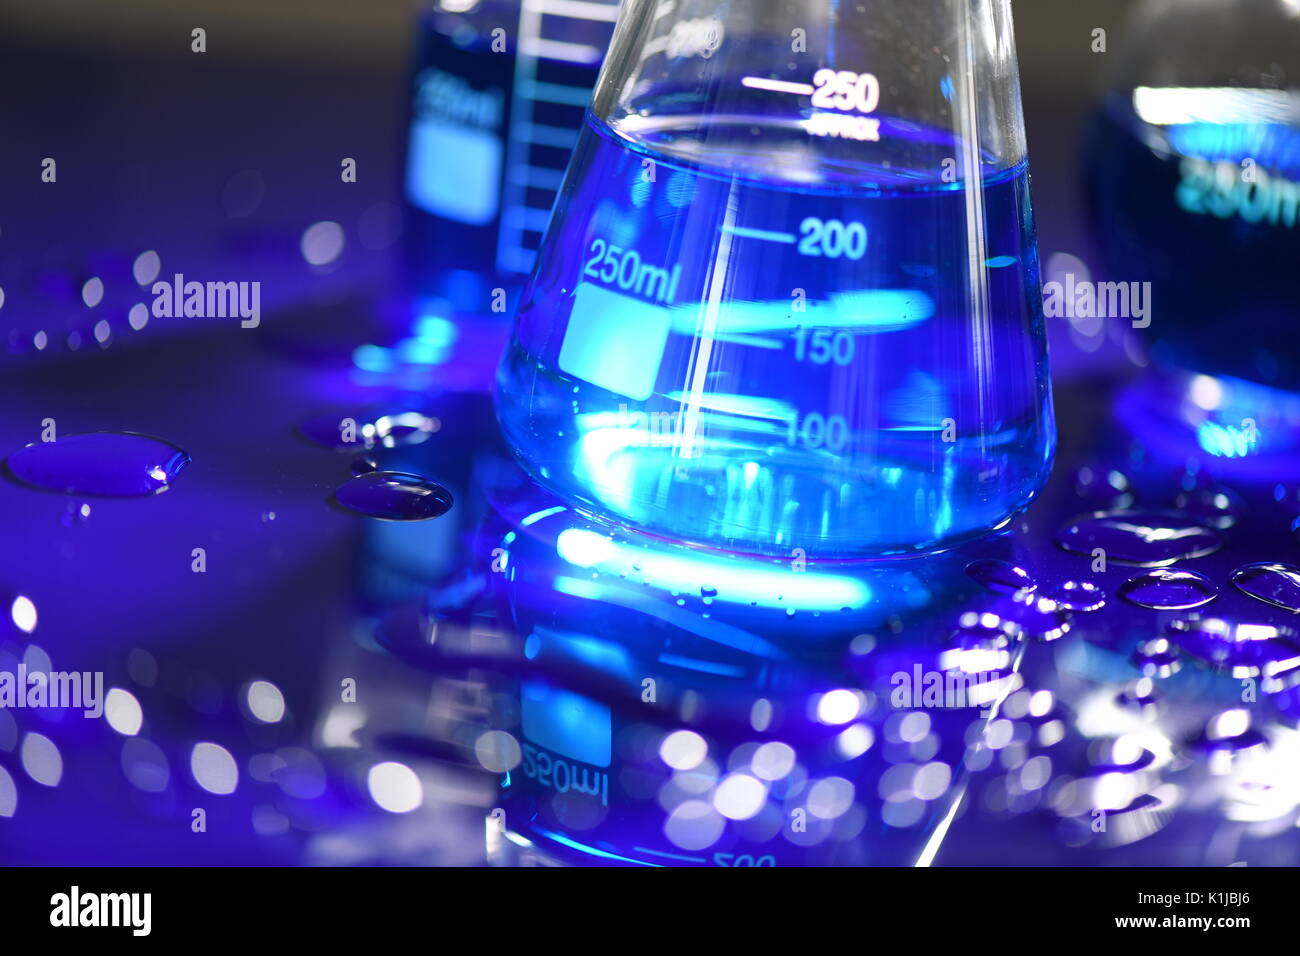 Laureato scienza conica bicchieri sulla acrilica blu Foto Stock